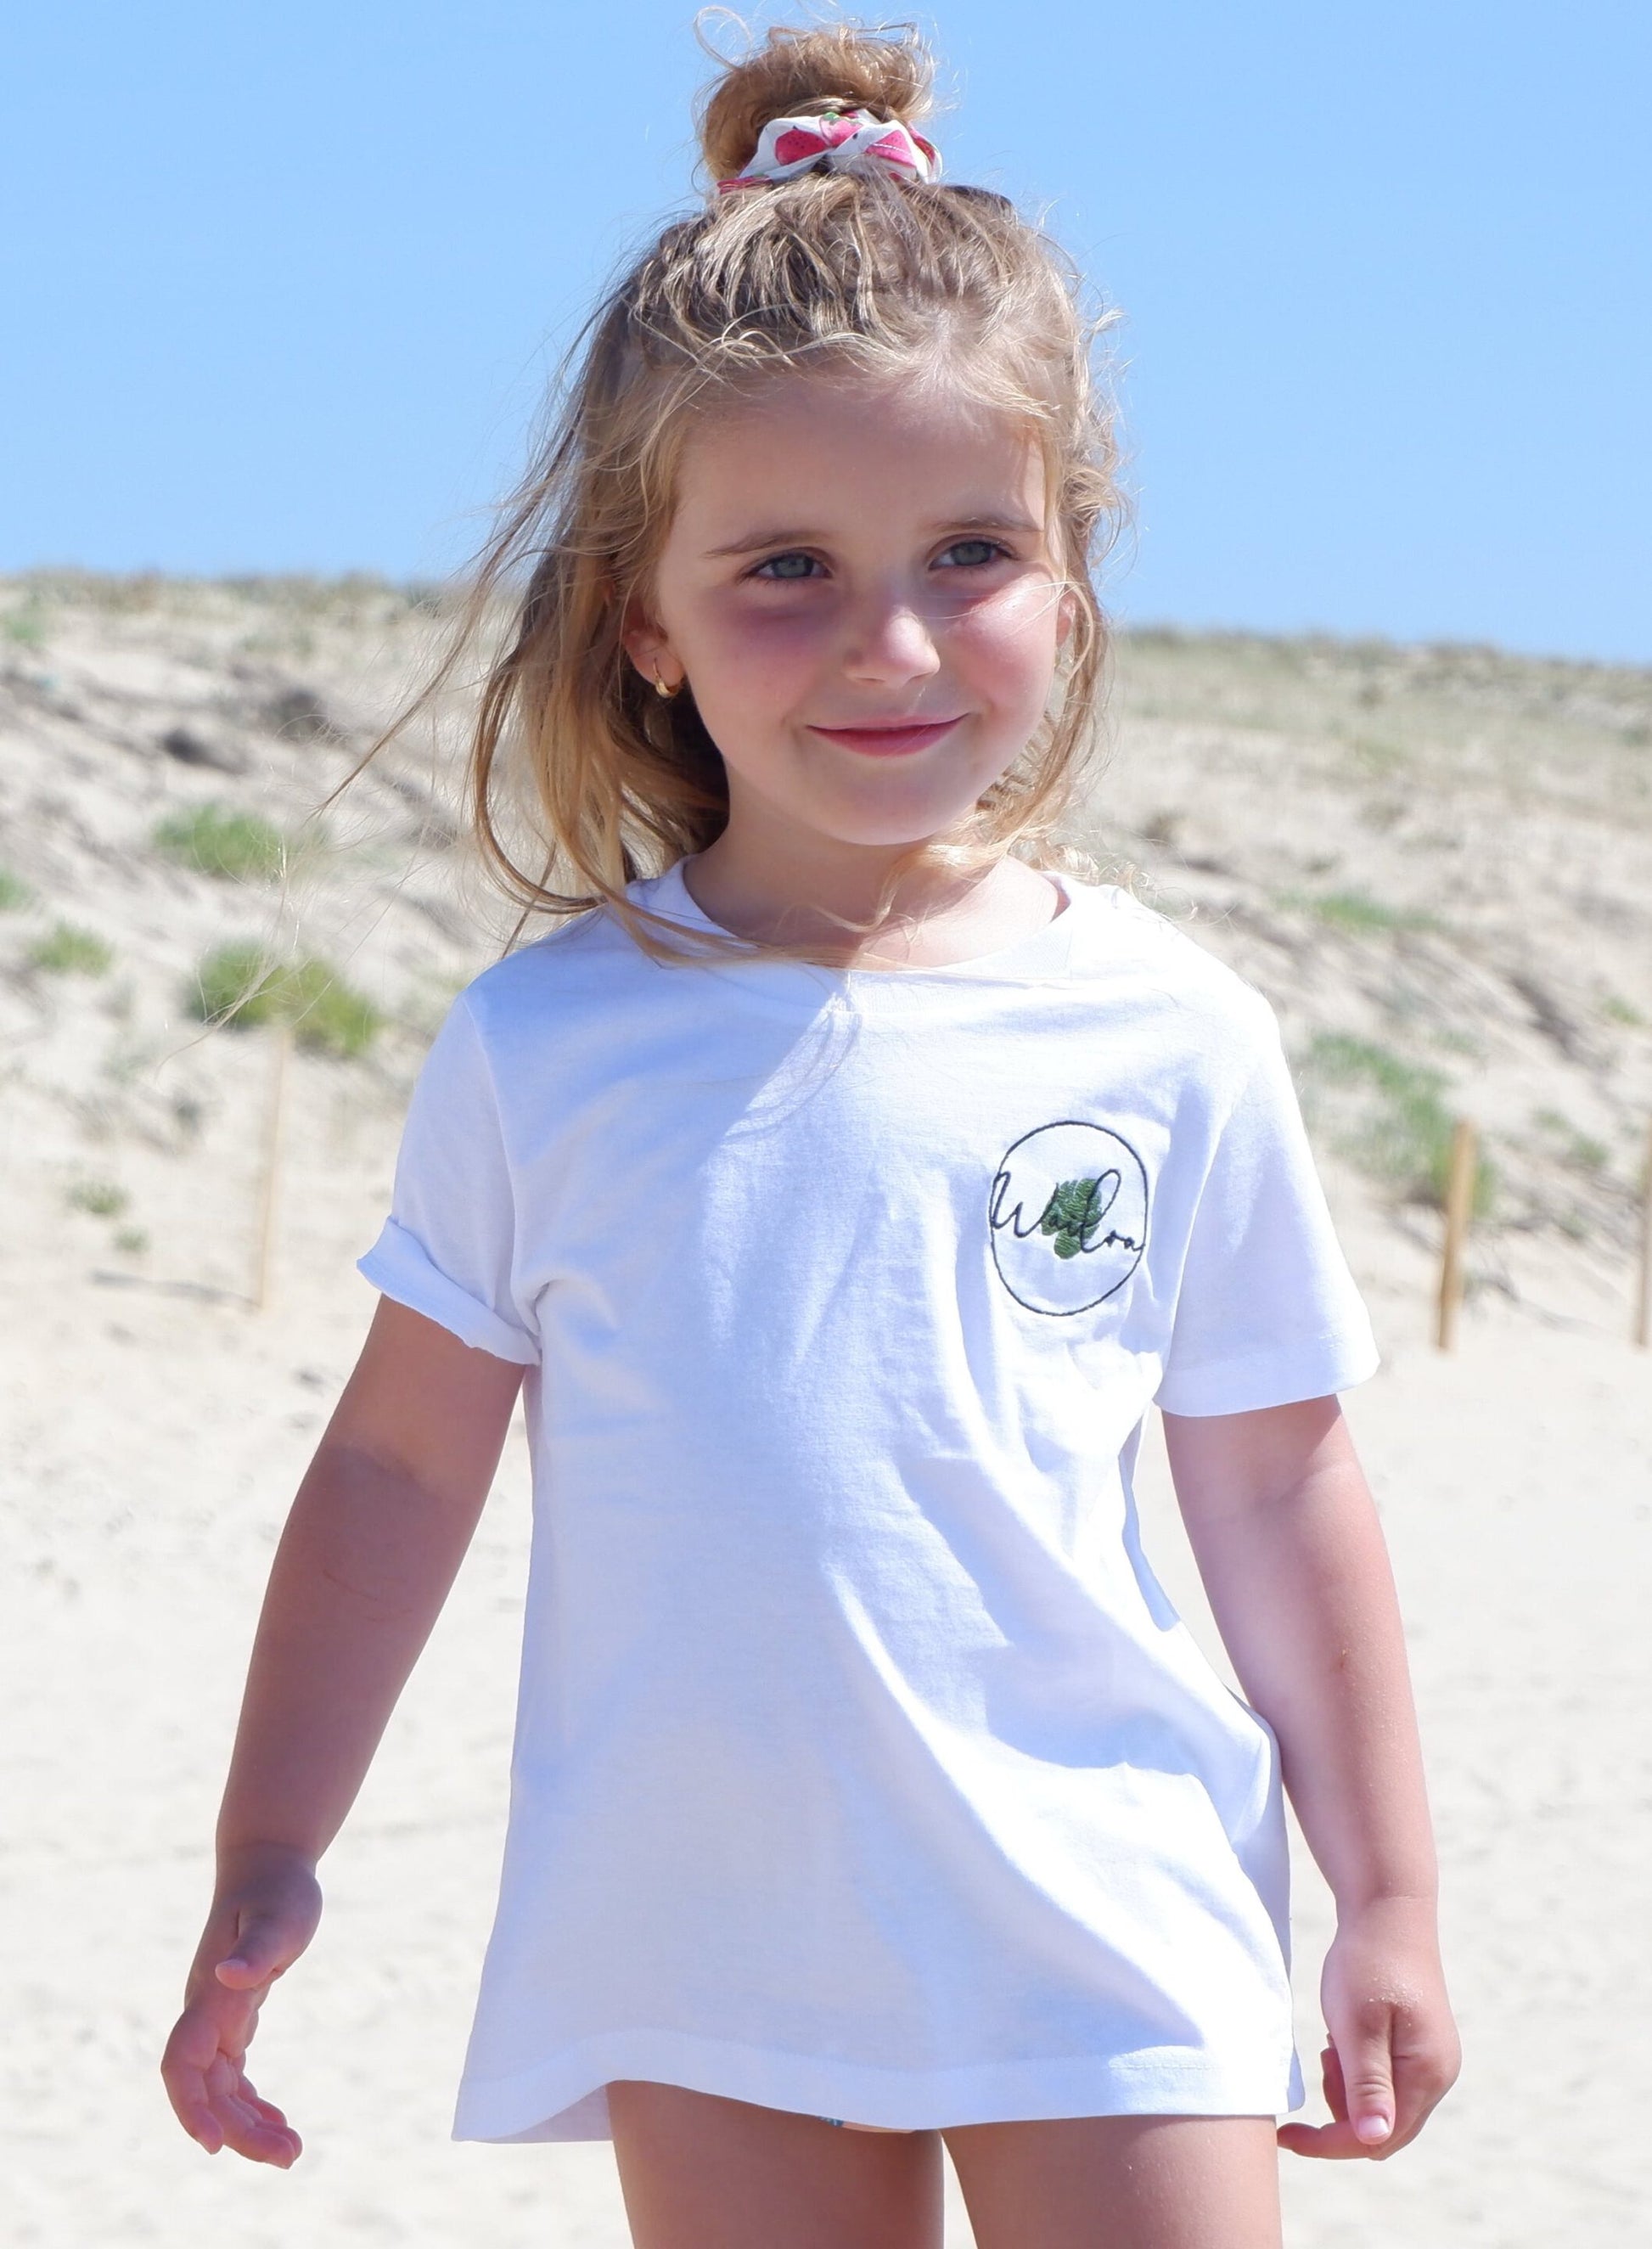 Il s'agit d'une photo d'une petite fille debout sur une plage. Elle porte un t-shirt blanc avec un logo brodé sur le côté gauche de la poitrine. Ses cheveux blonds sont partiellement attachés en haut de sa tête avec un élastique rose. Elle sourit et regarde vers l'appareil photo. Derrière elle, on peut voir un paysage de dunes de sable.